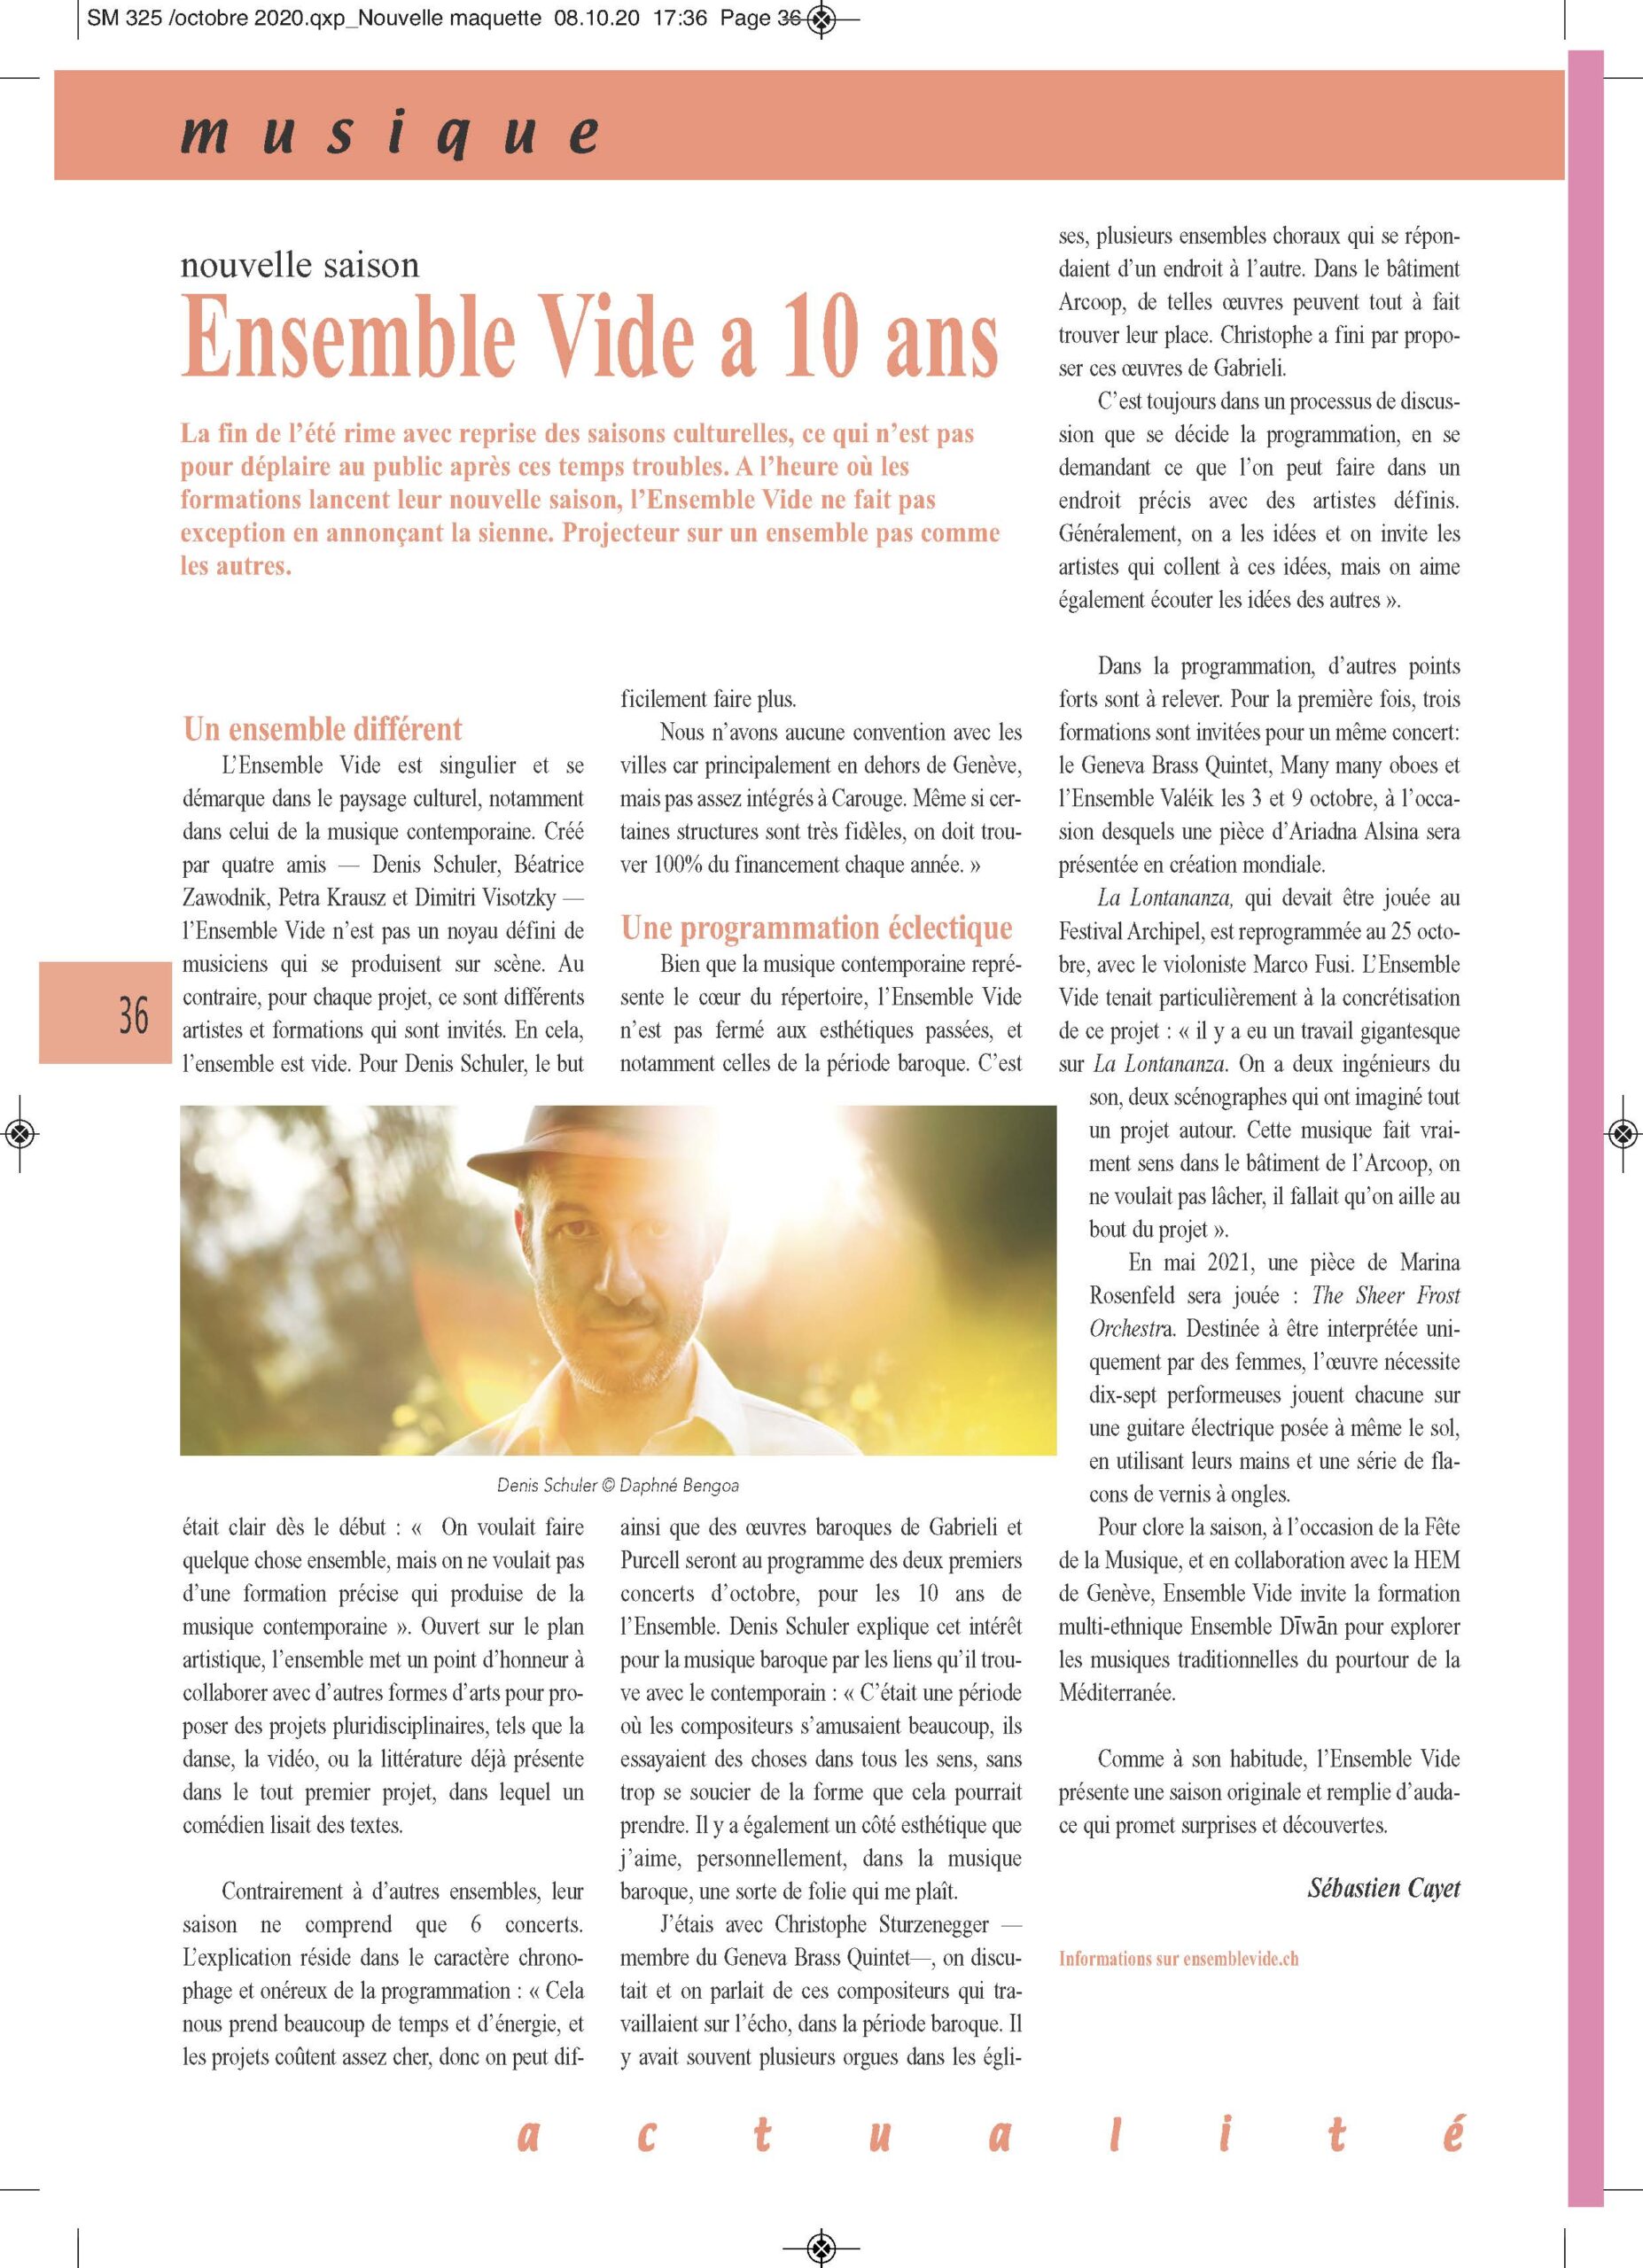 Scènes Magazine 08/10/2020